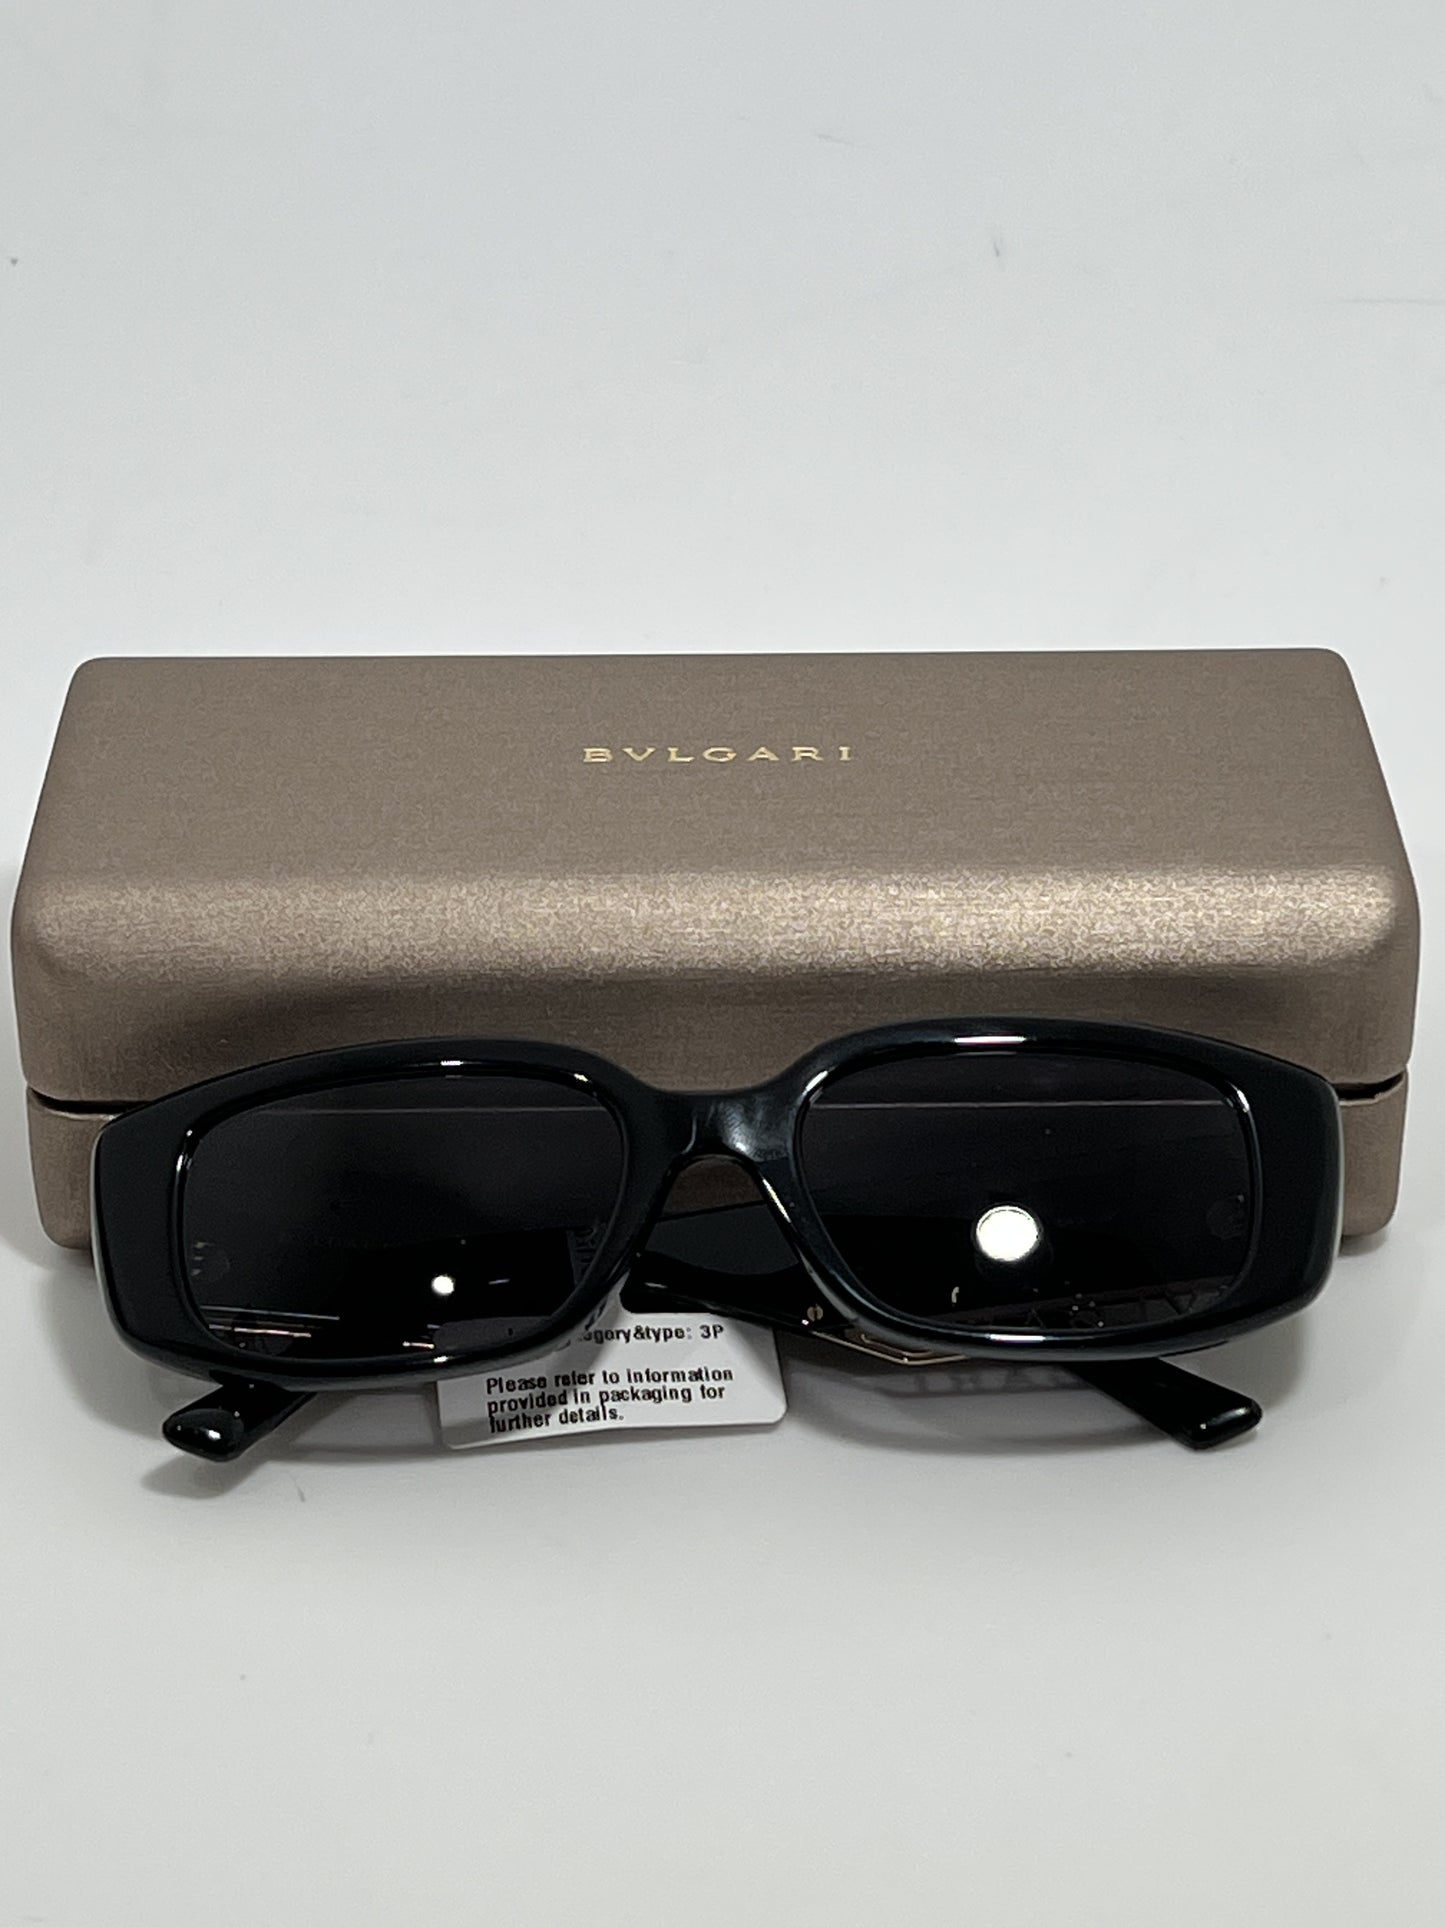 Bvlgari 8259 Cermic Sunglasses in Black